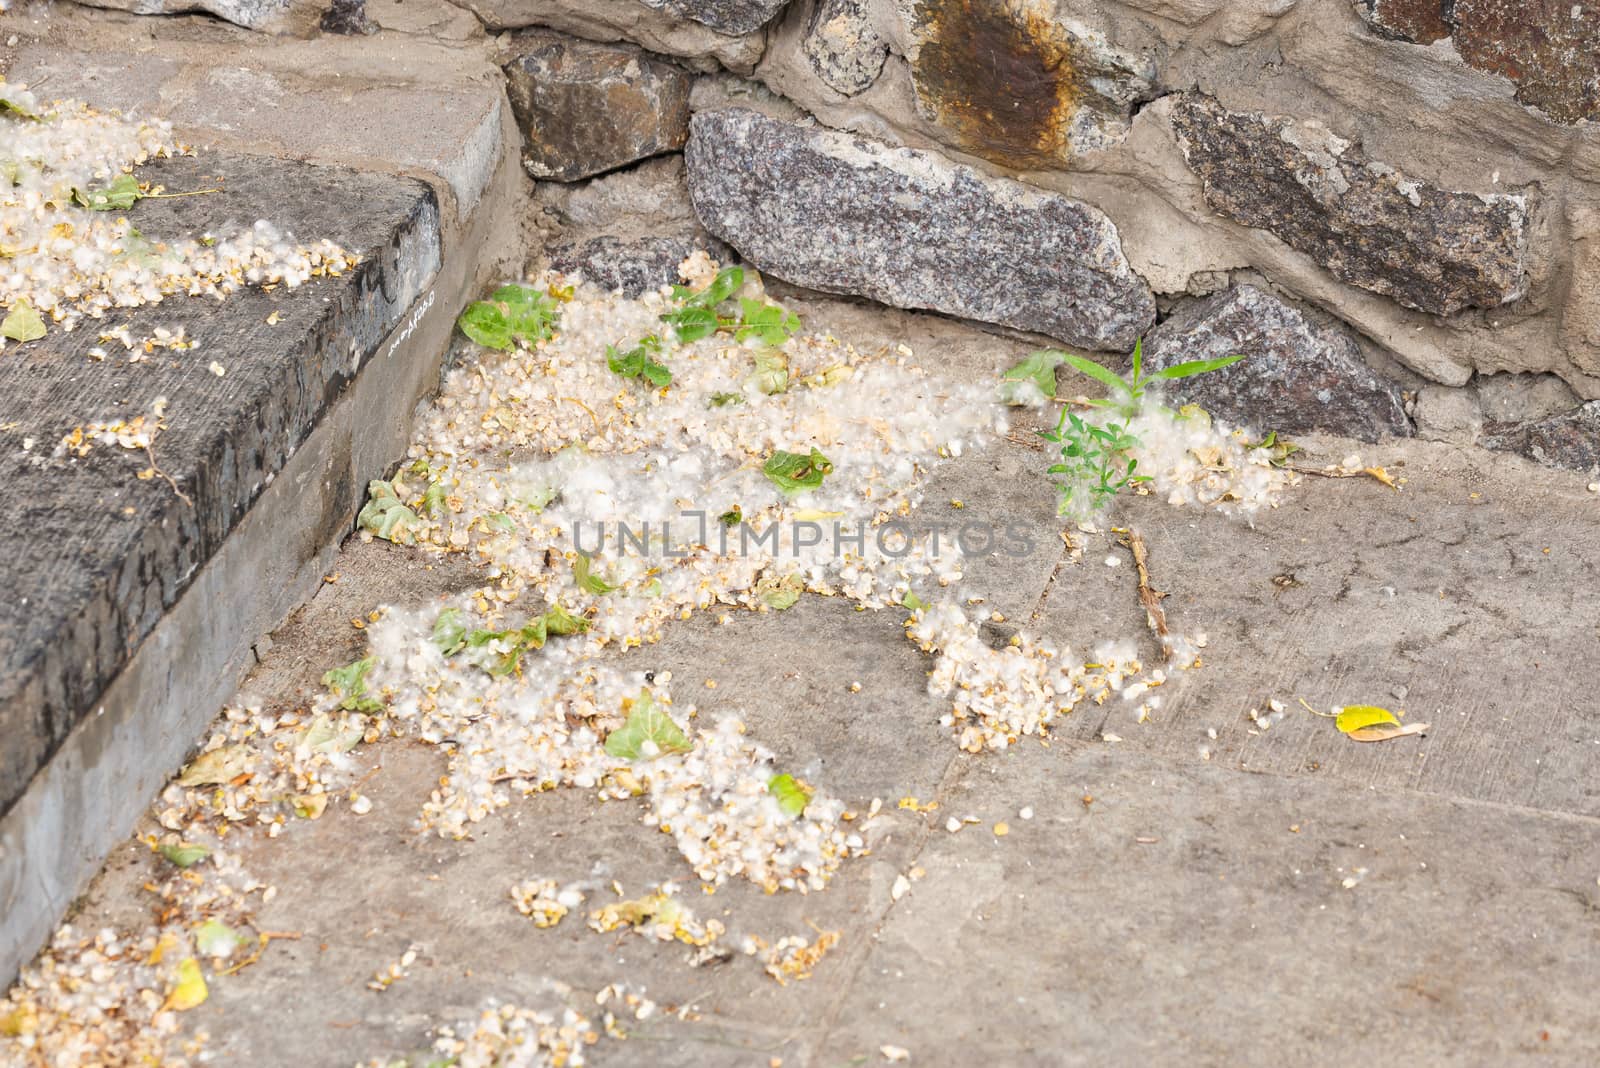 Poplar seeds on the ground by MaxalTamor